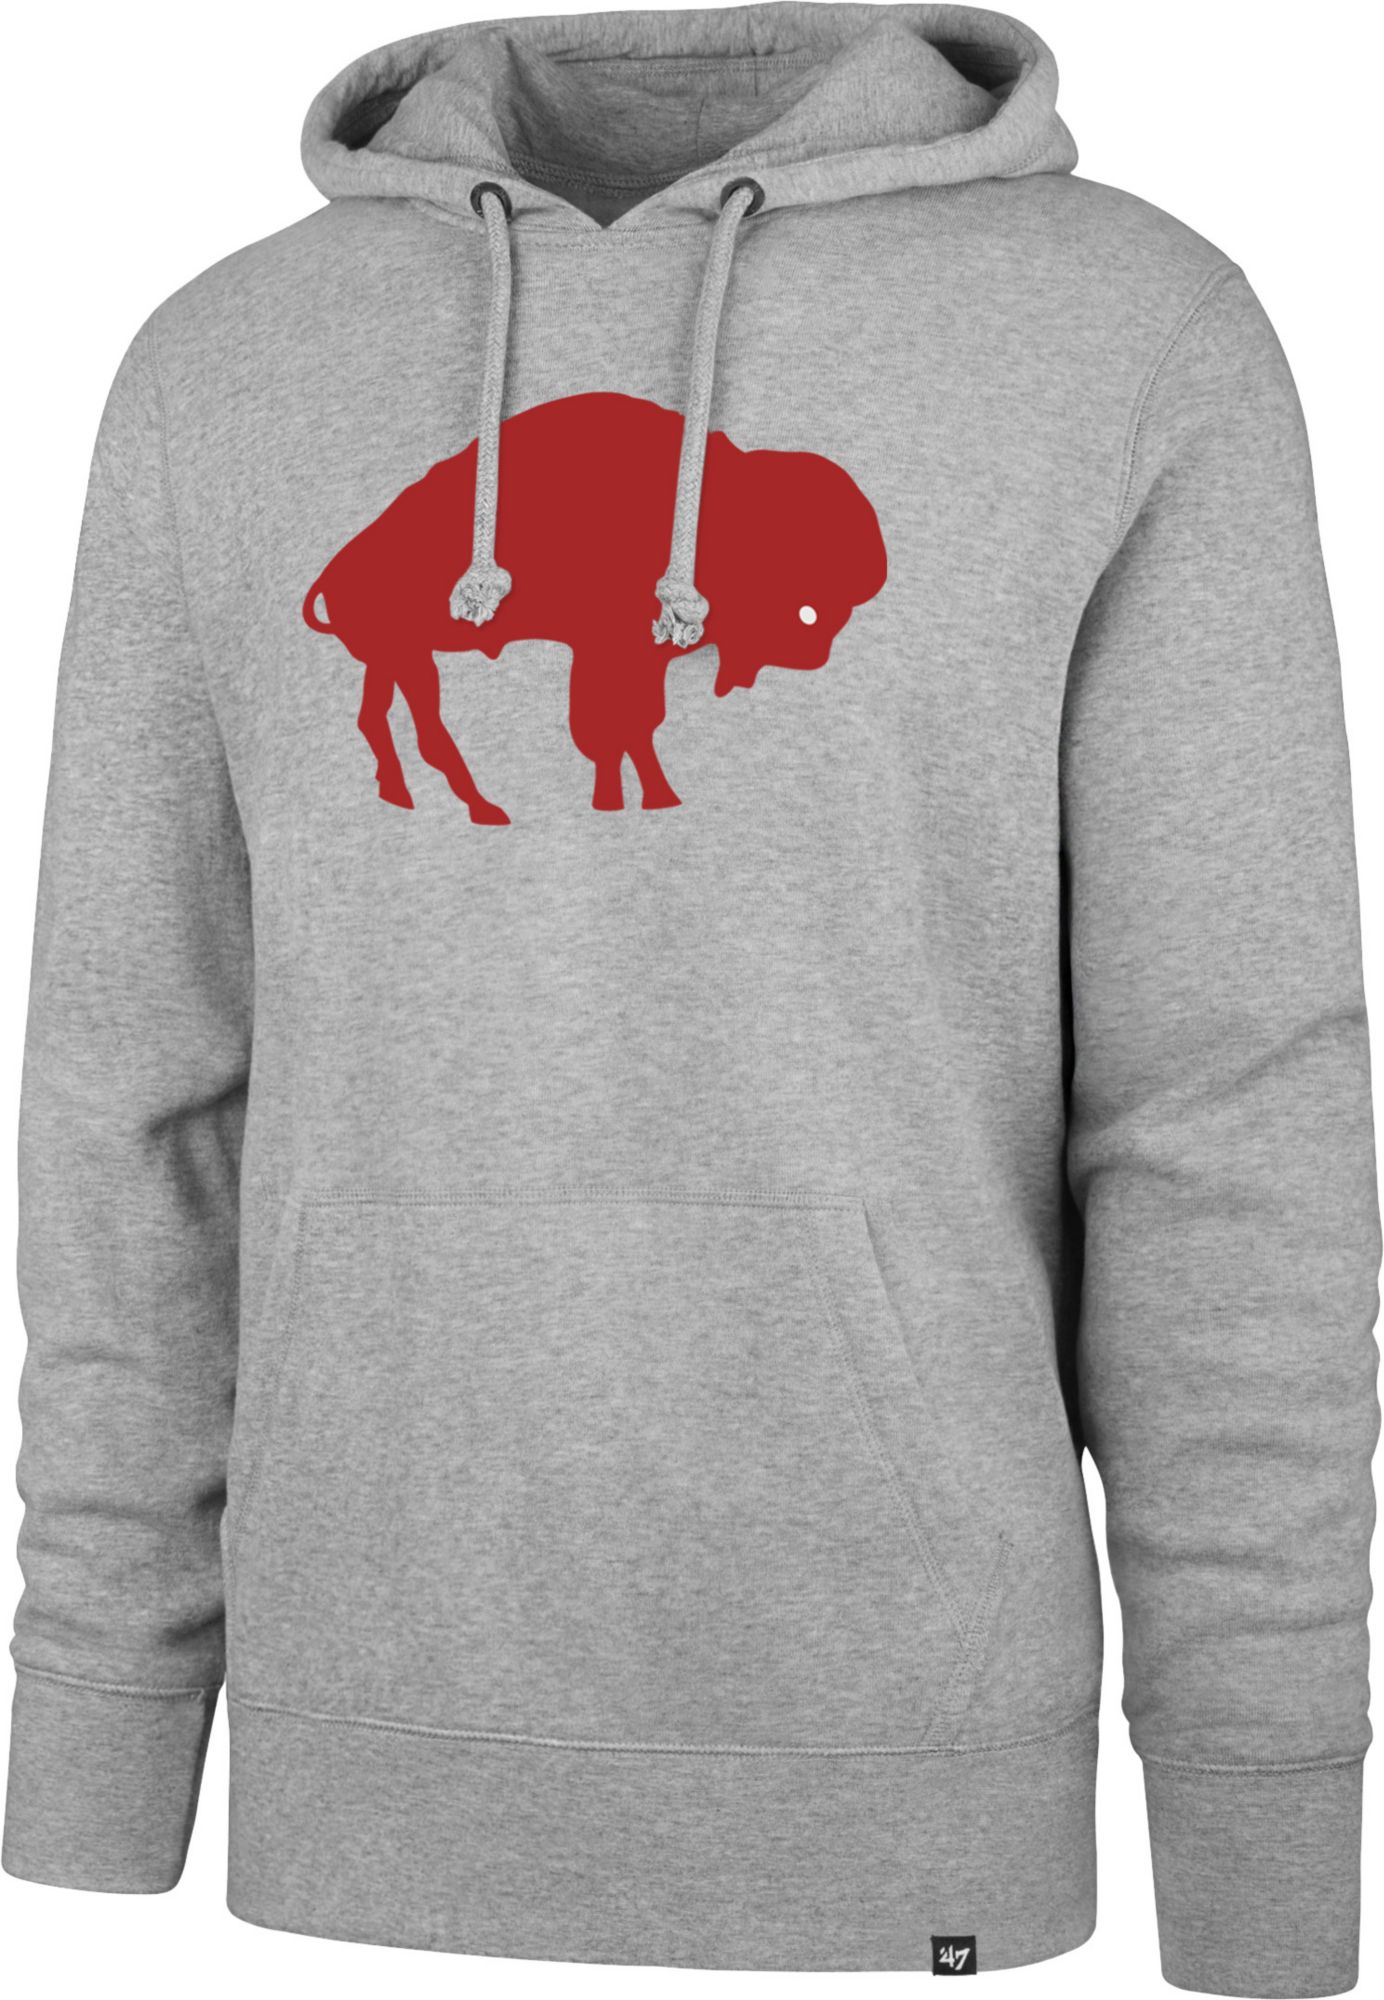 buffalo bills throwback sweatshirt